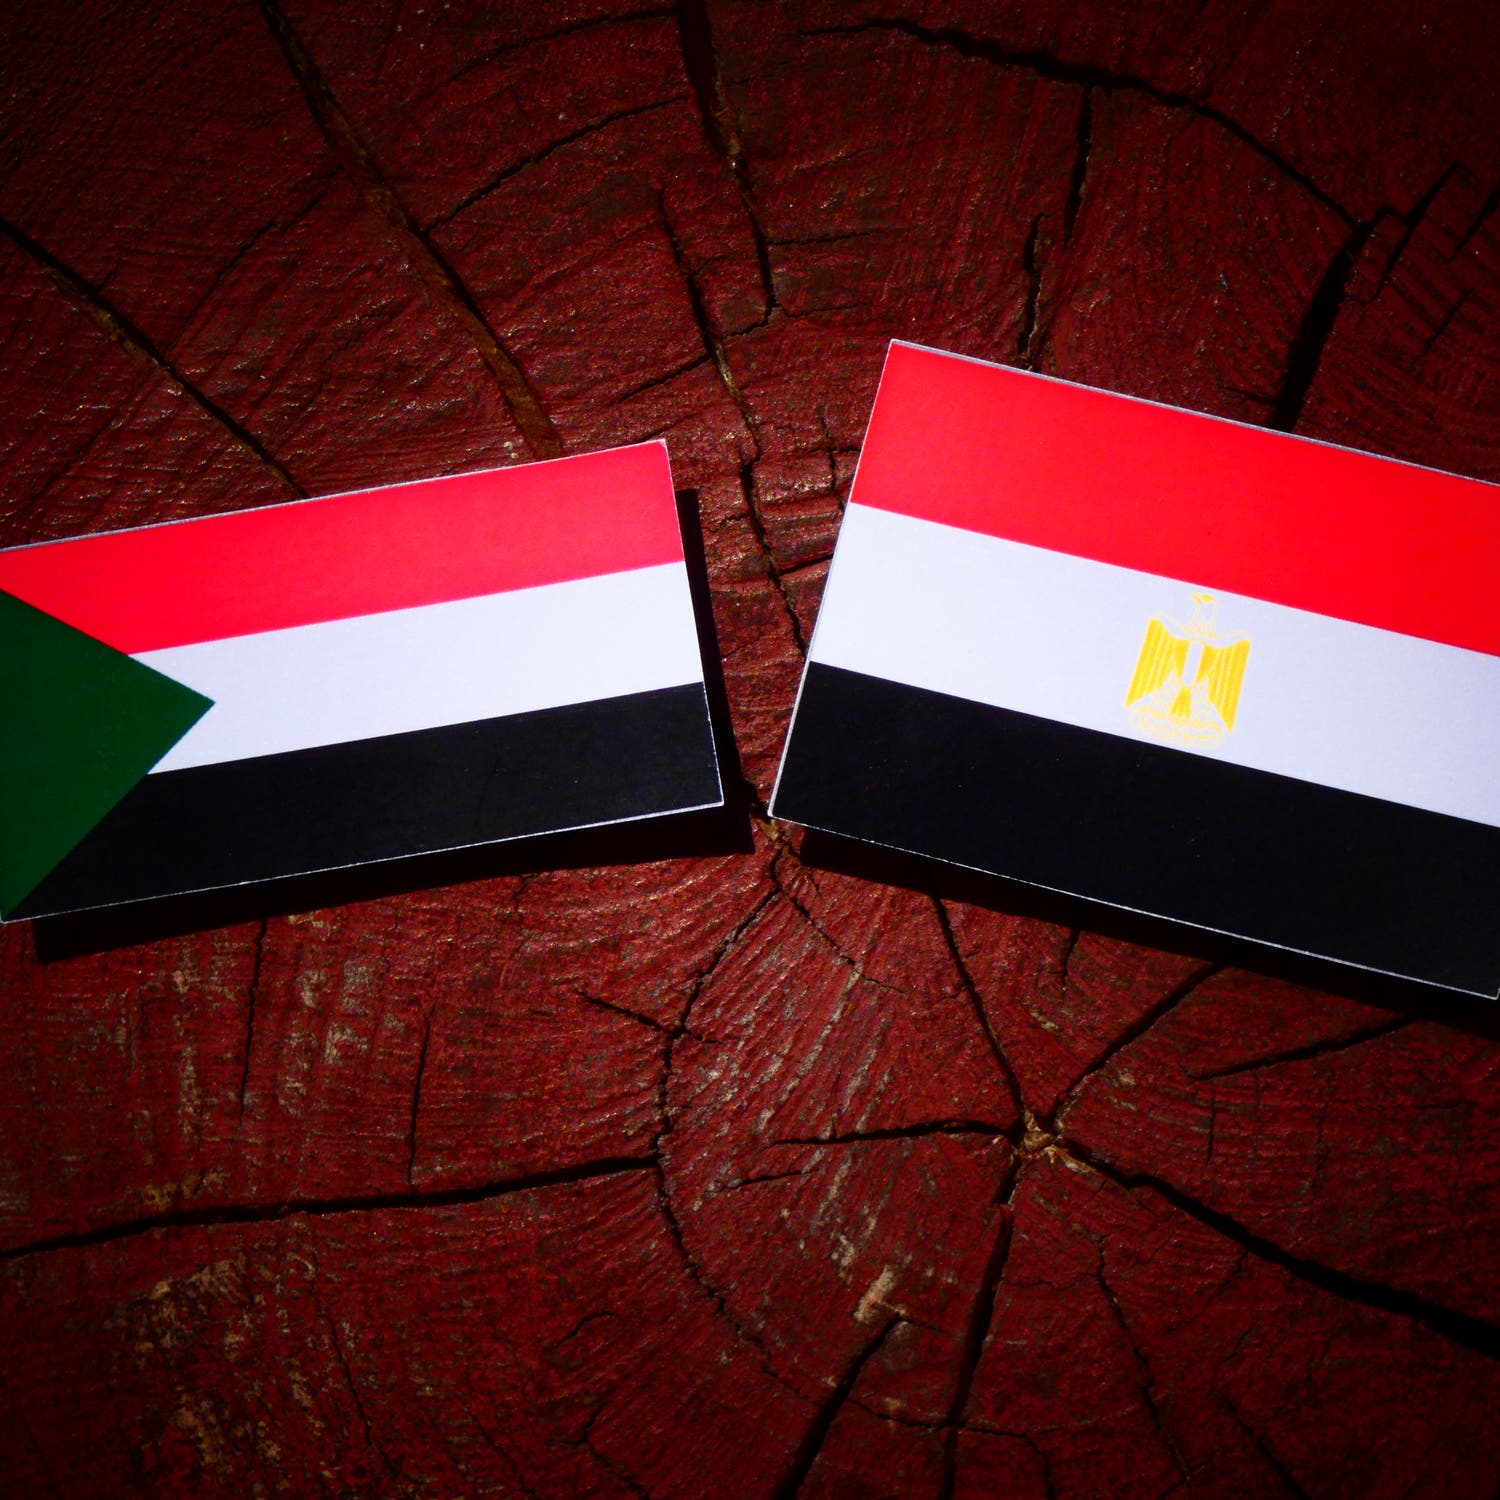 اتصالات مصرية مع السودان لتسليم عناصر إخوانية ضمن خلية داعشية